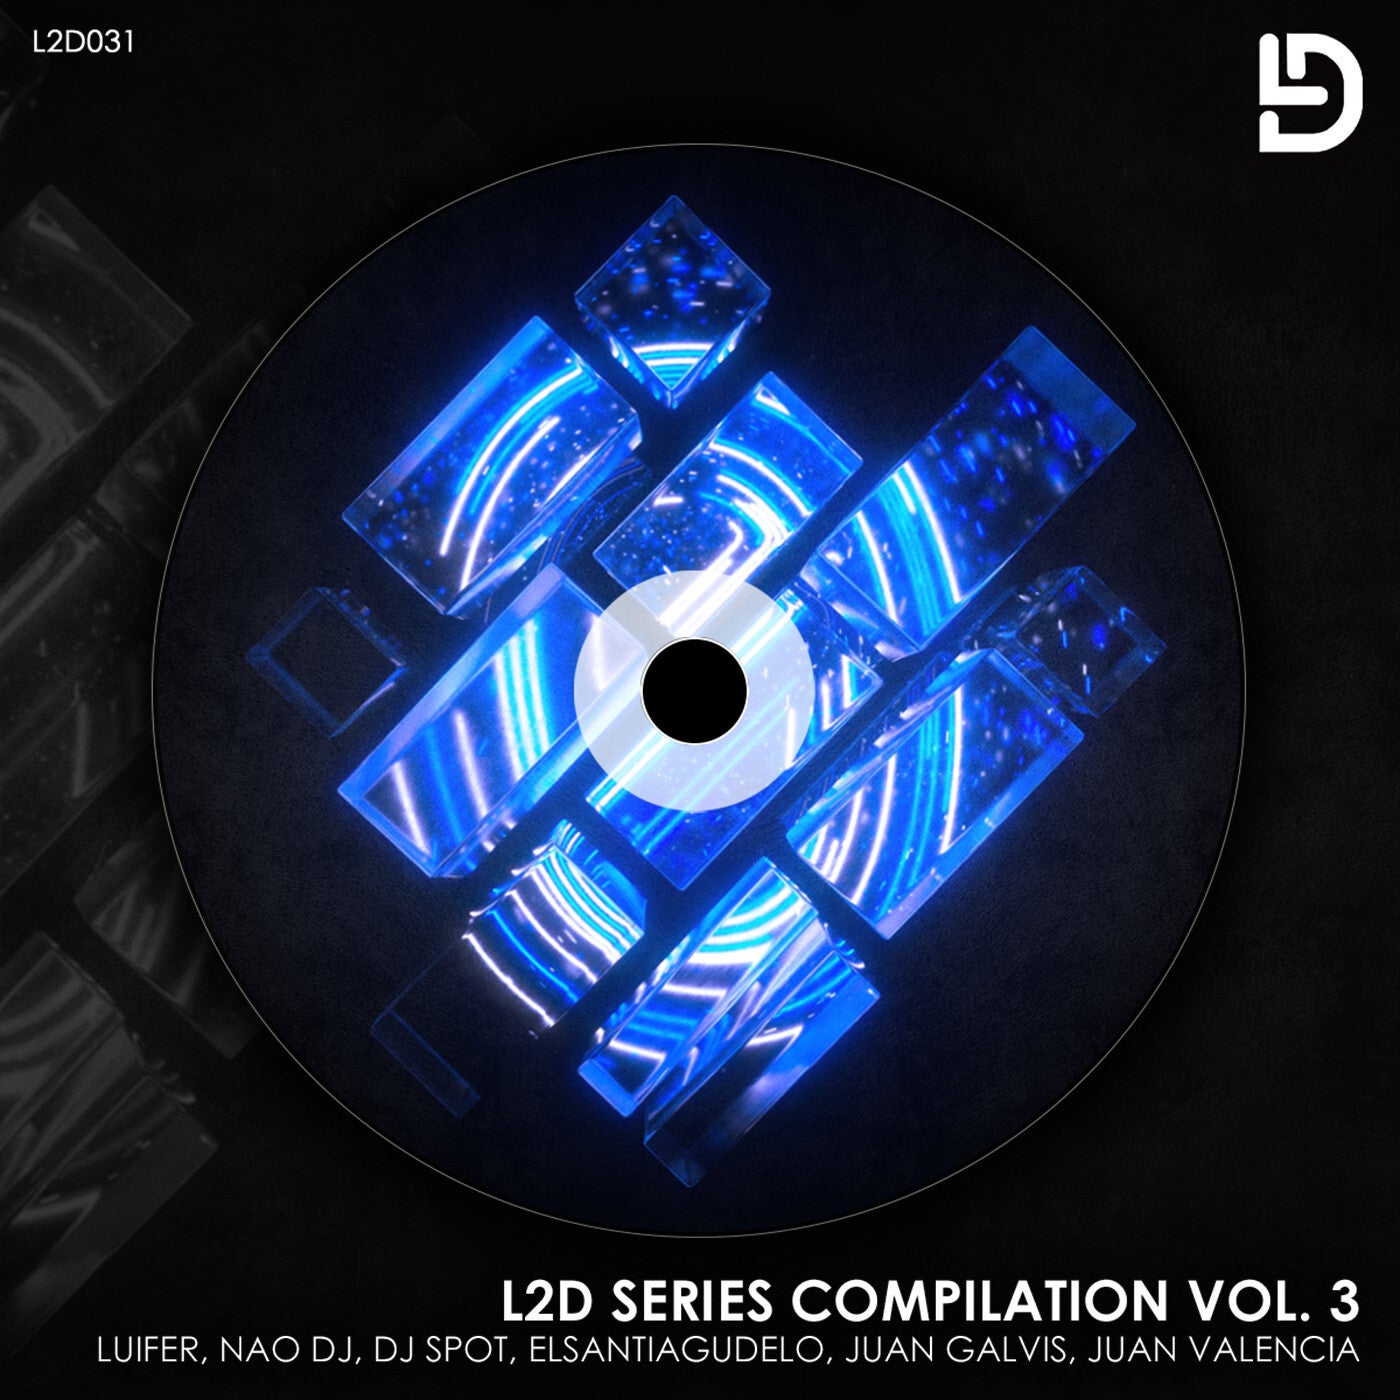 L2D Series Compilation Vol. 3